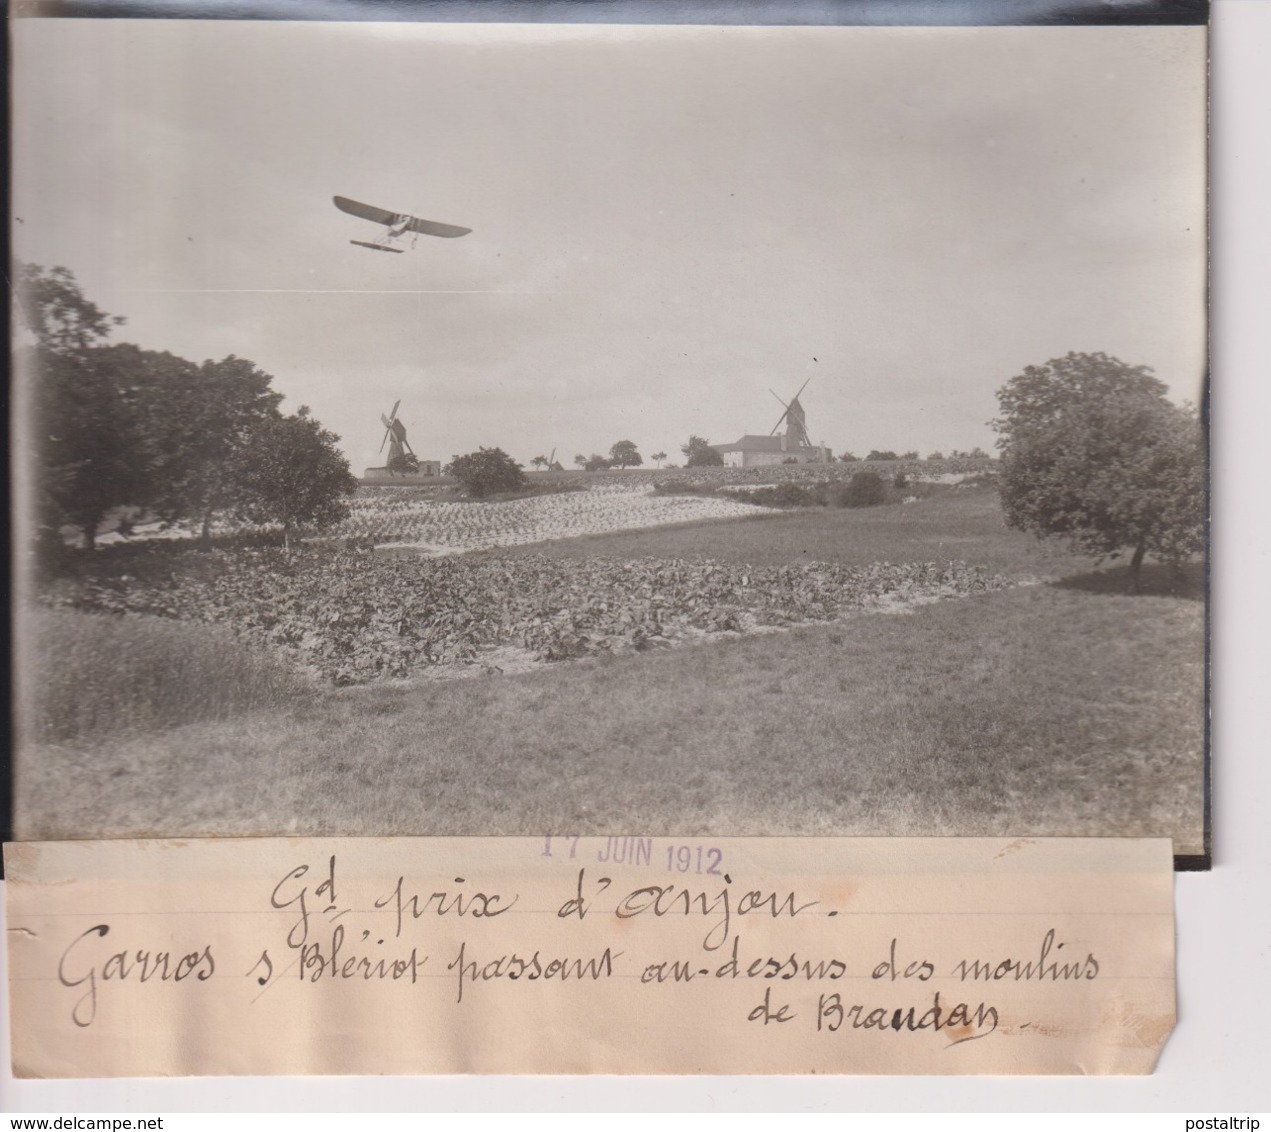 GRAND PRIX D'ANJOU GARROS S BLERIOT PASSANT DES MOULINS DE BRAUDAN  18*13CM Maurice-Louis BRANGER PARÍS (1874-1950) - Aviation